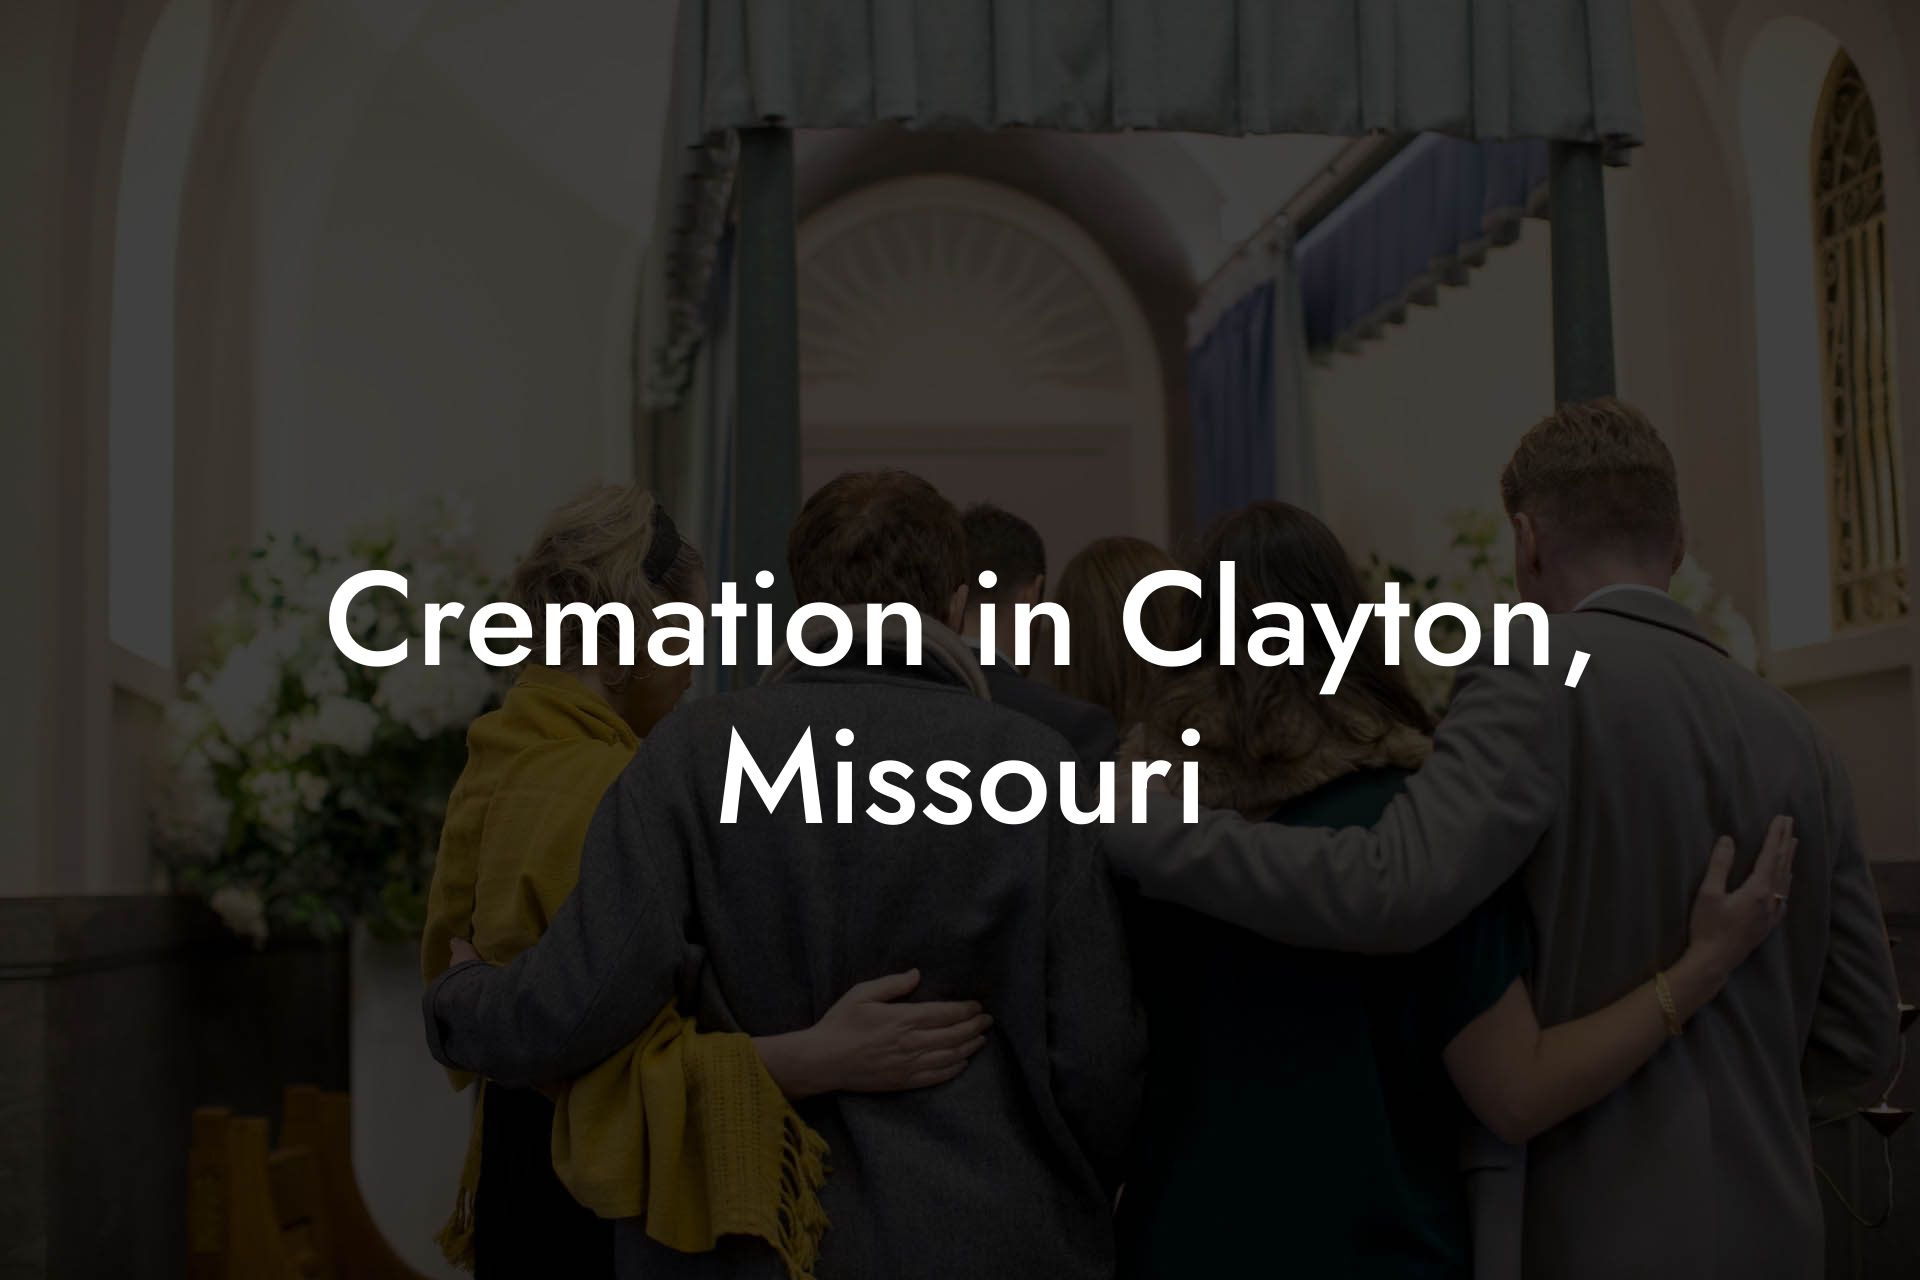 Cremation in Clayton, Missouri